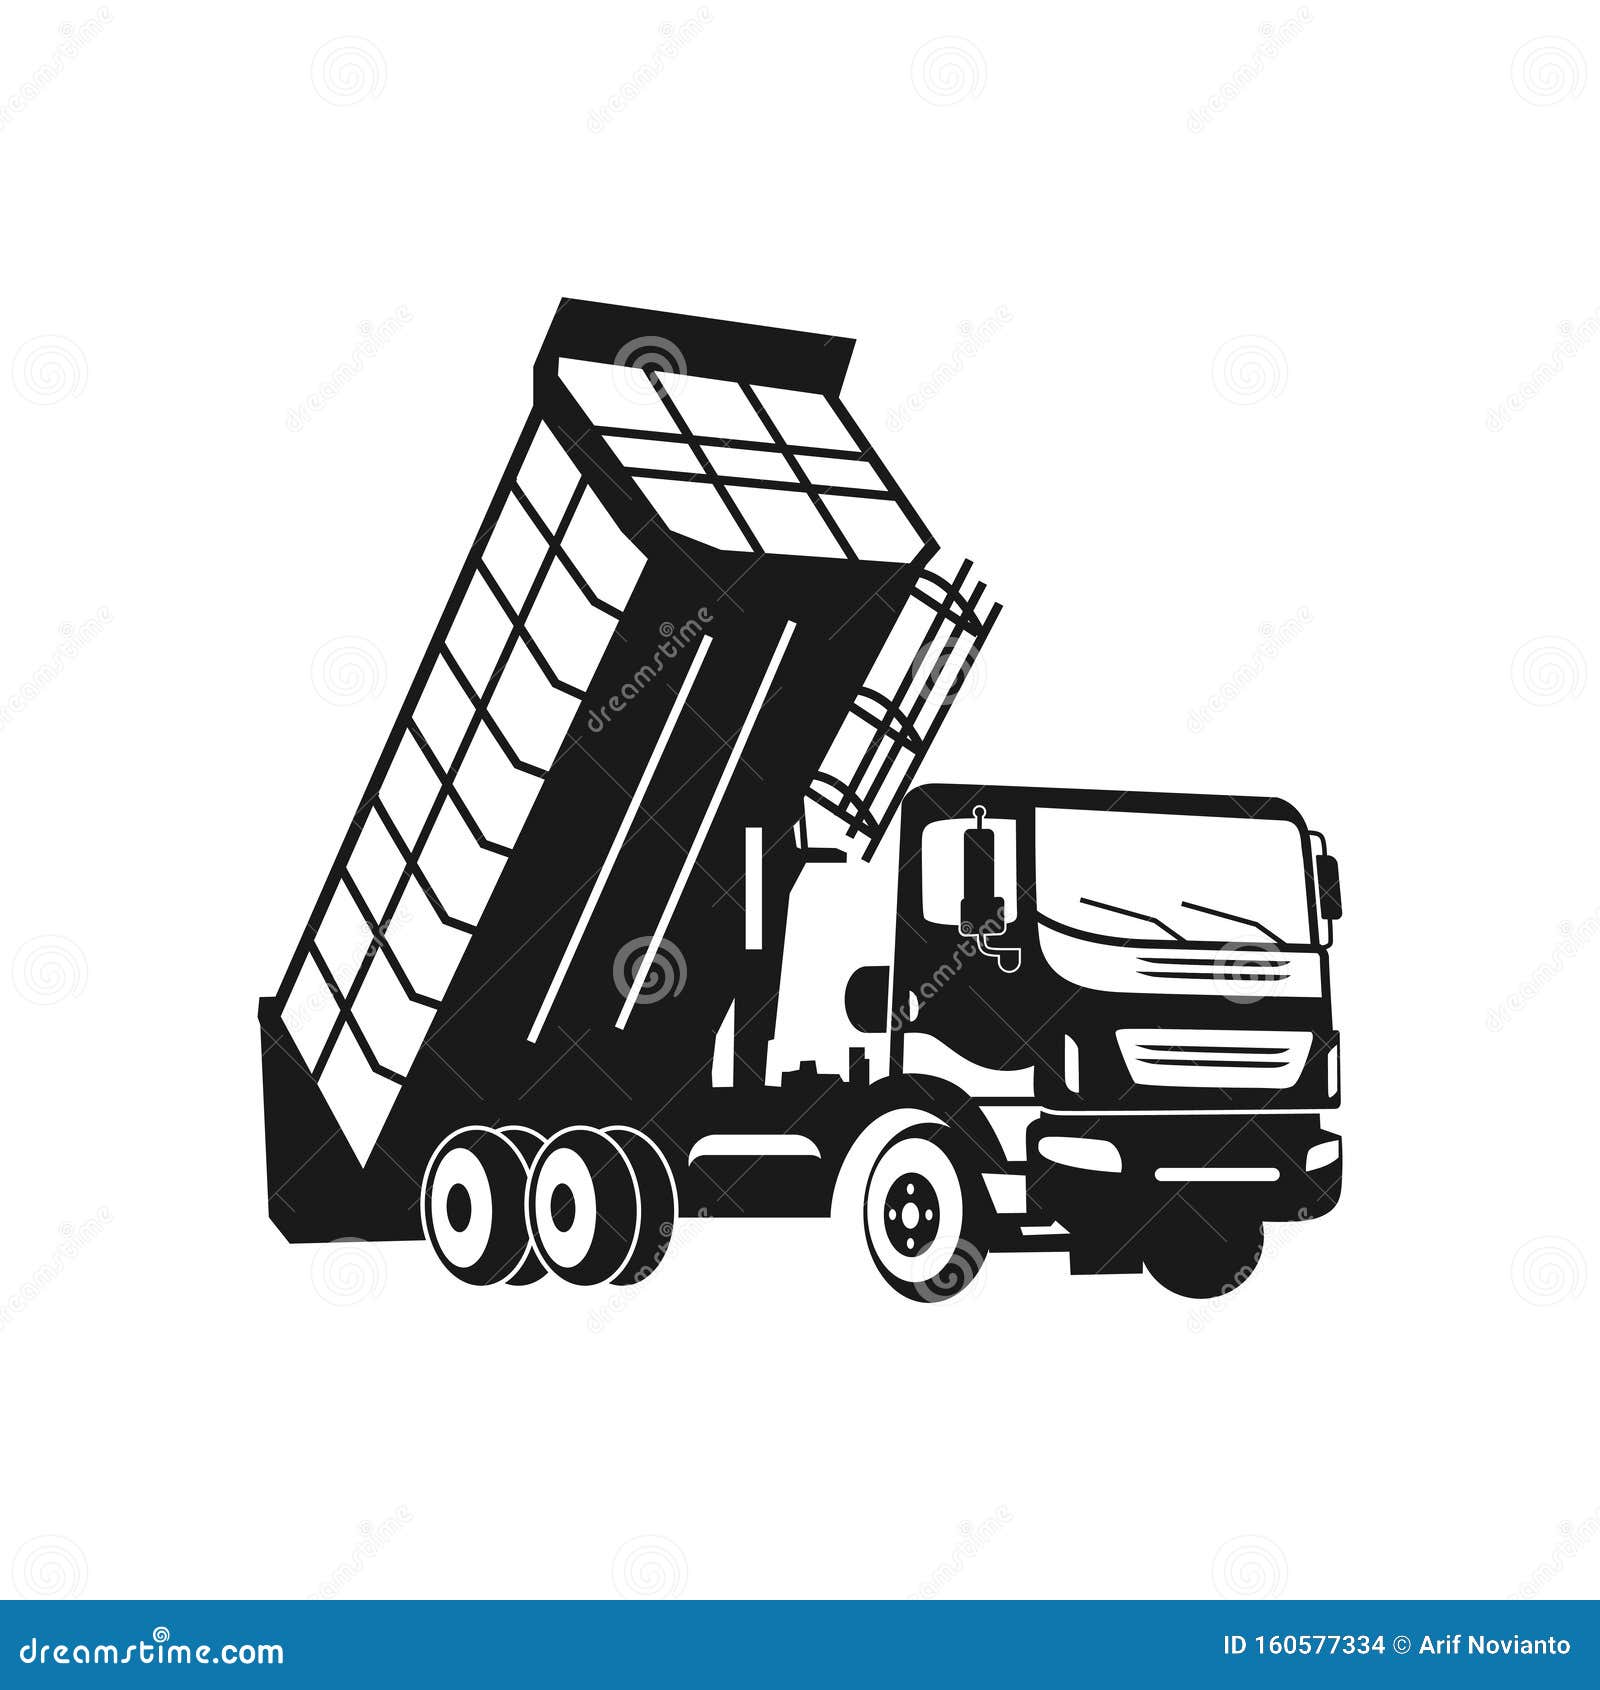 Silhouette Dump Truck Design Stock Vector - Illustration ...